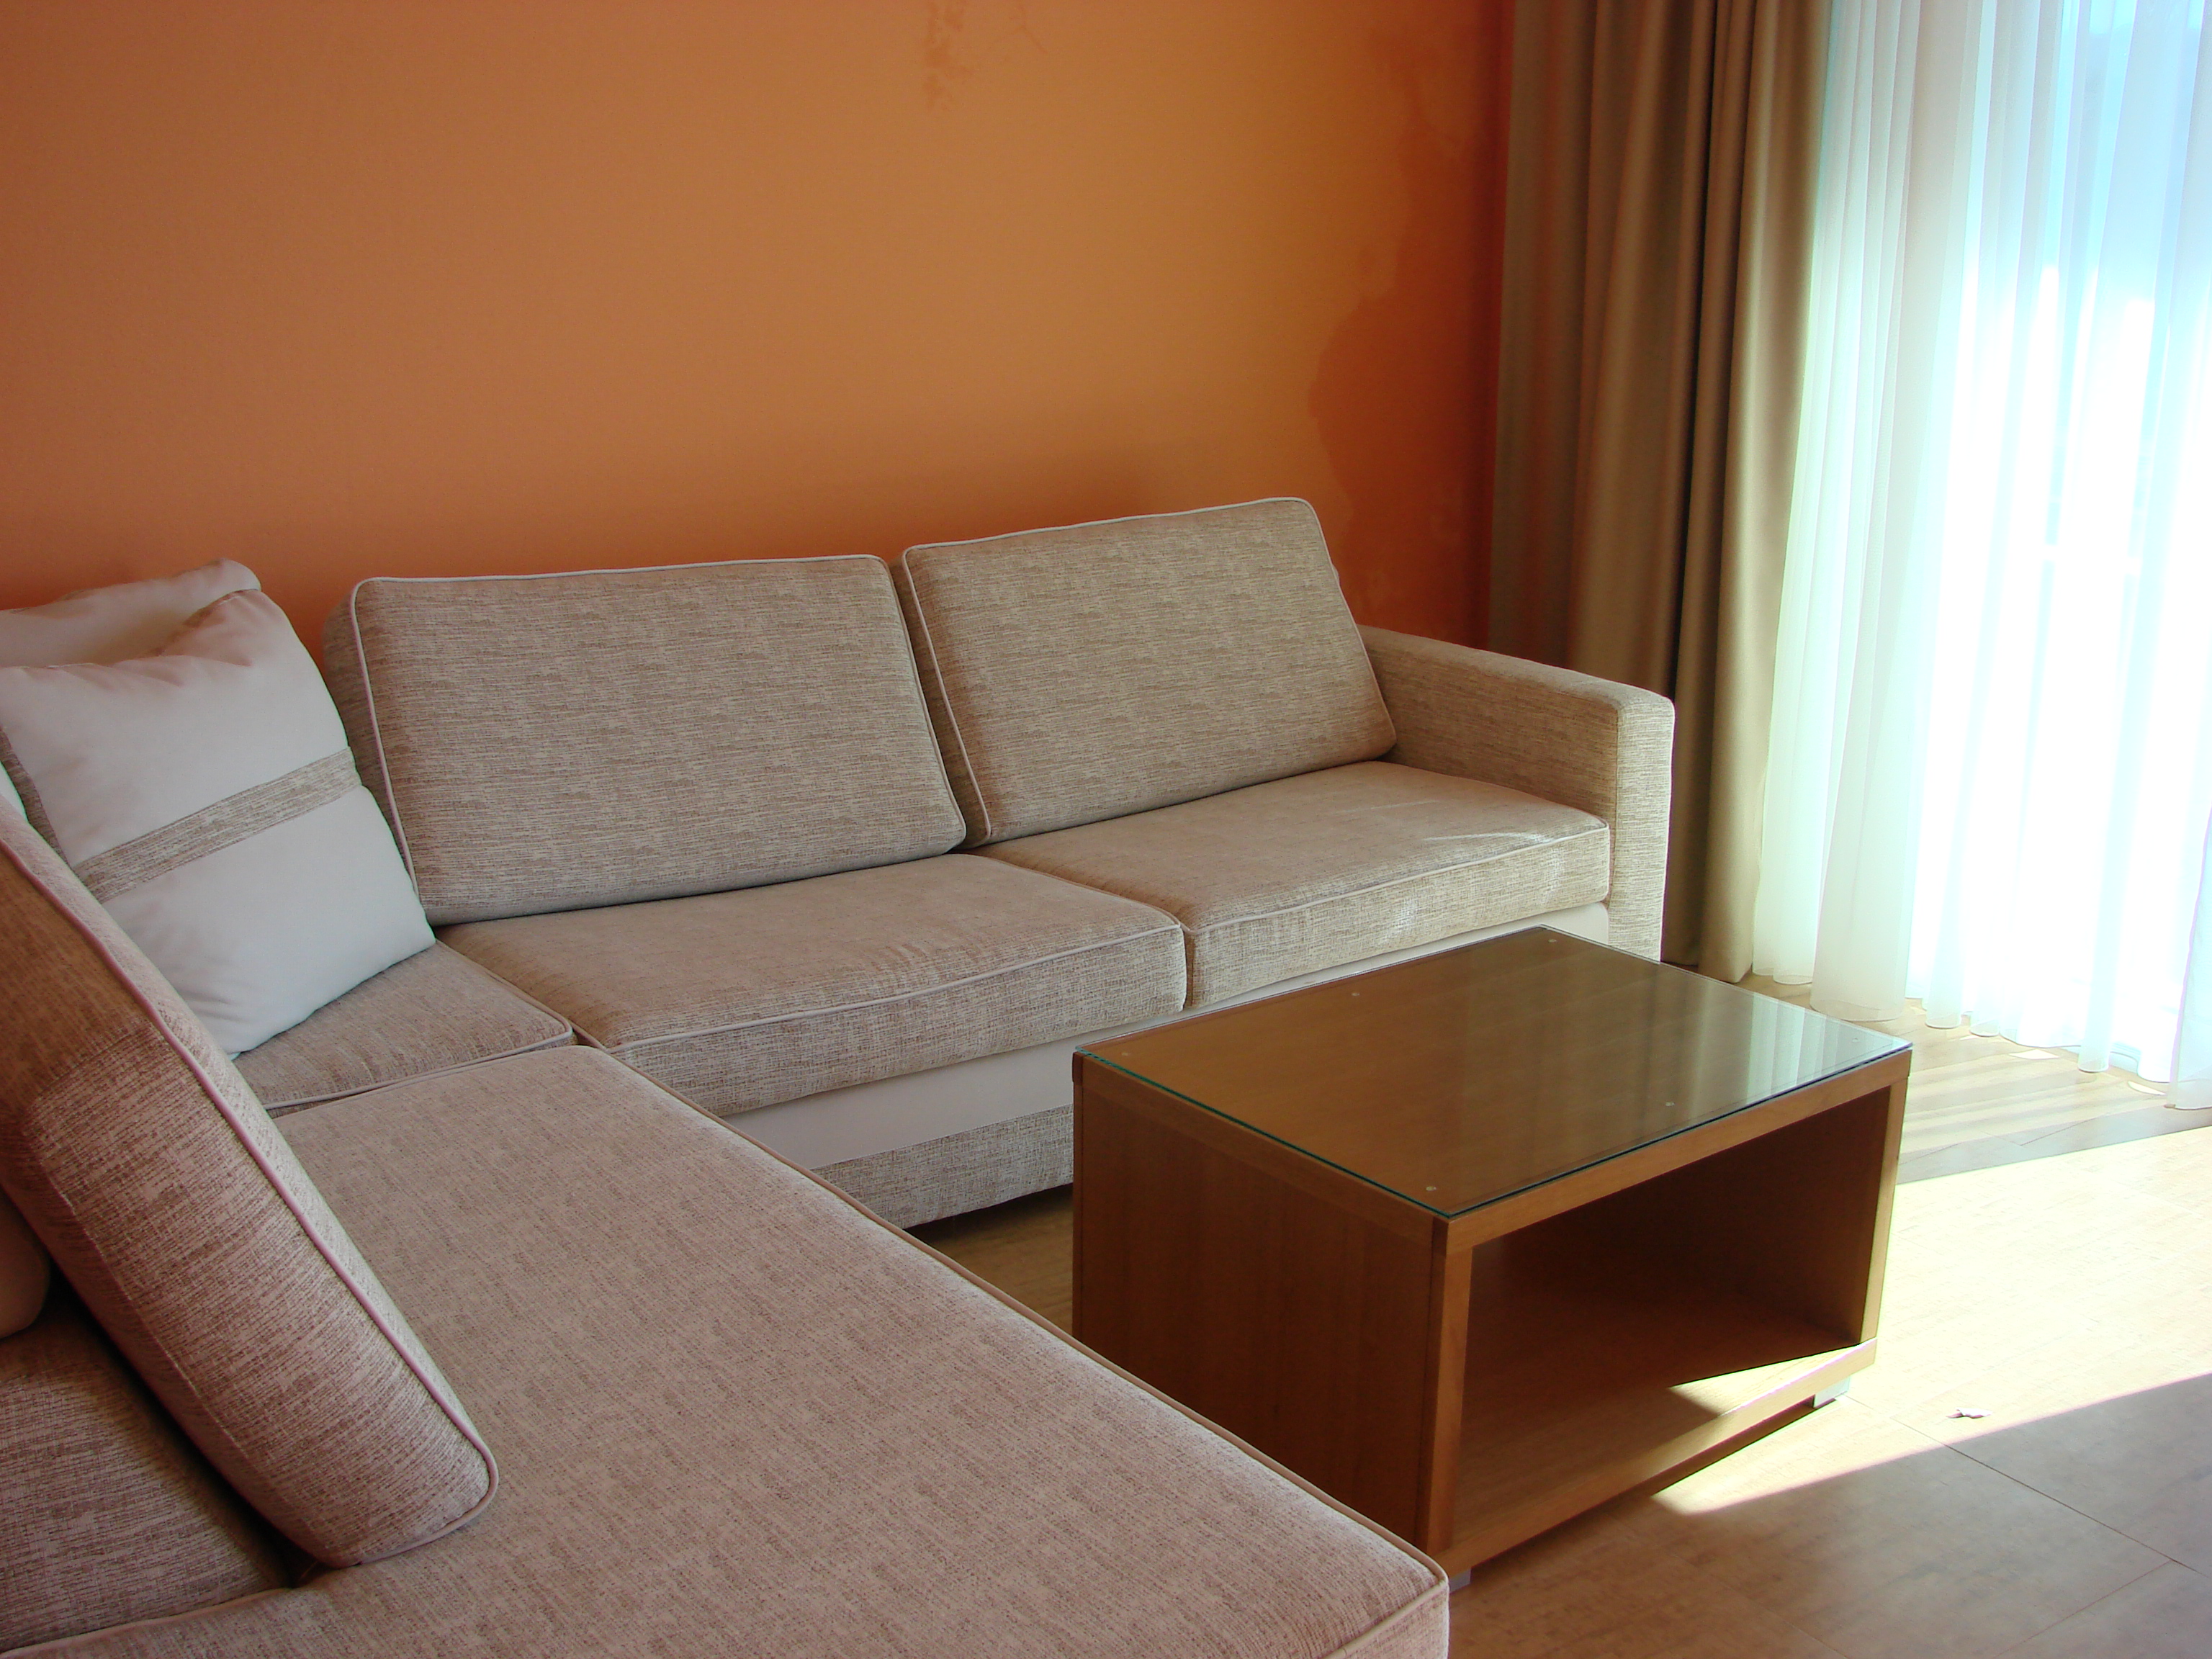  Комфортабельные апартаменты в Черногории 